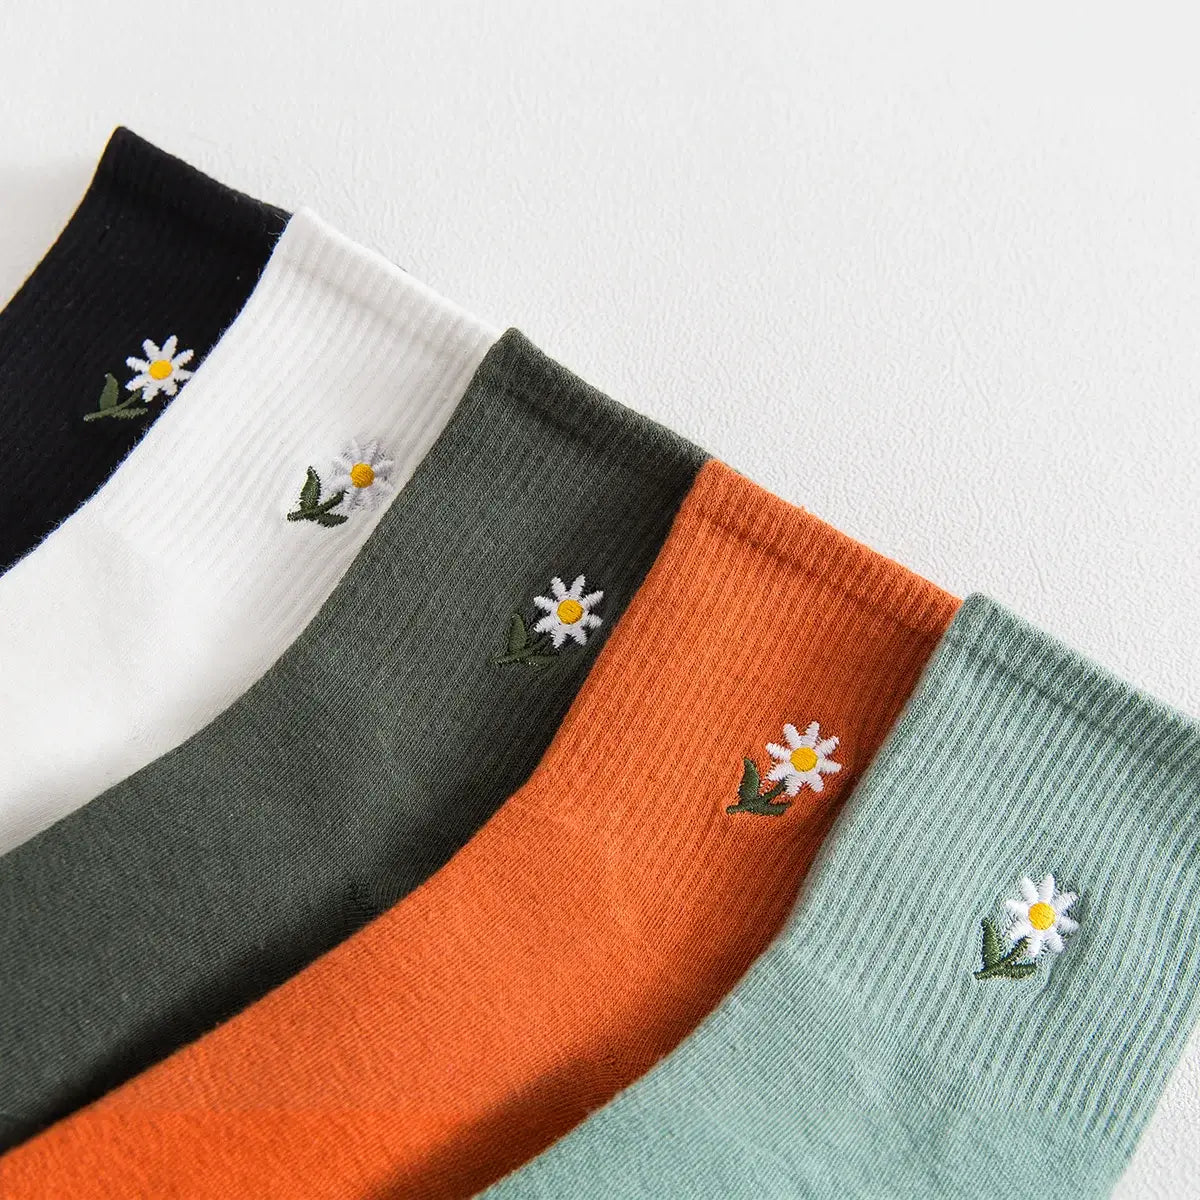 Chaussettes en coton à motif fleurs pour adultes | Chaussettes douces et confortables | Disponibles en différentes couleurs et motifs | Un cadeau idéal pour les femmes de tous âges